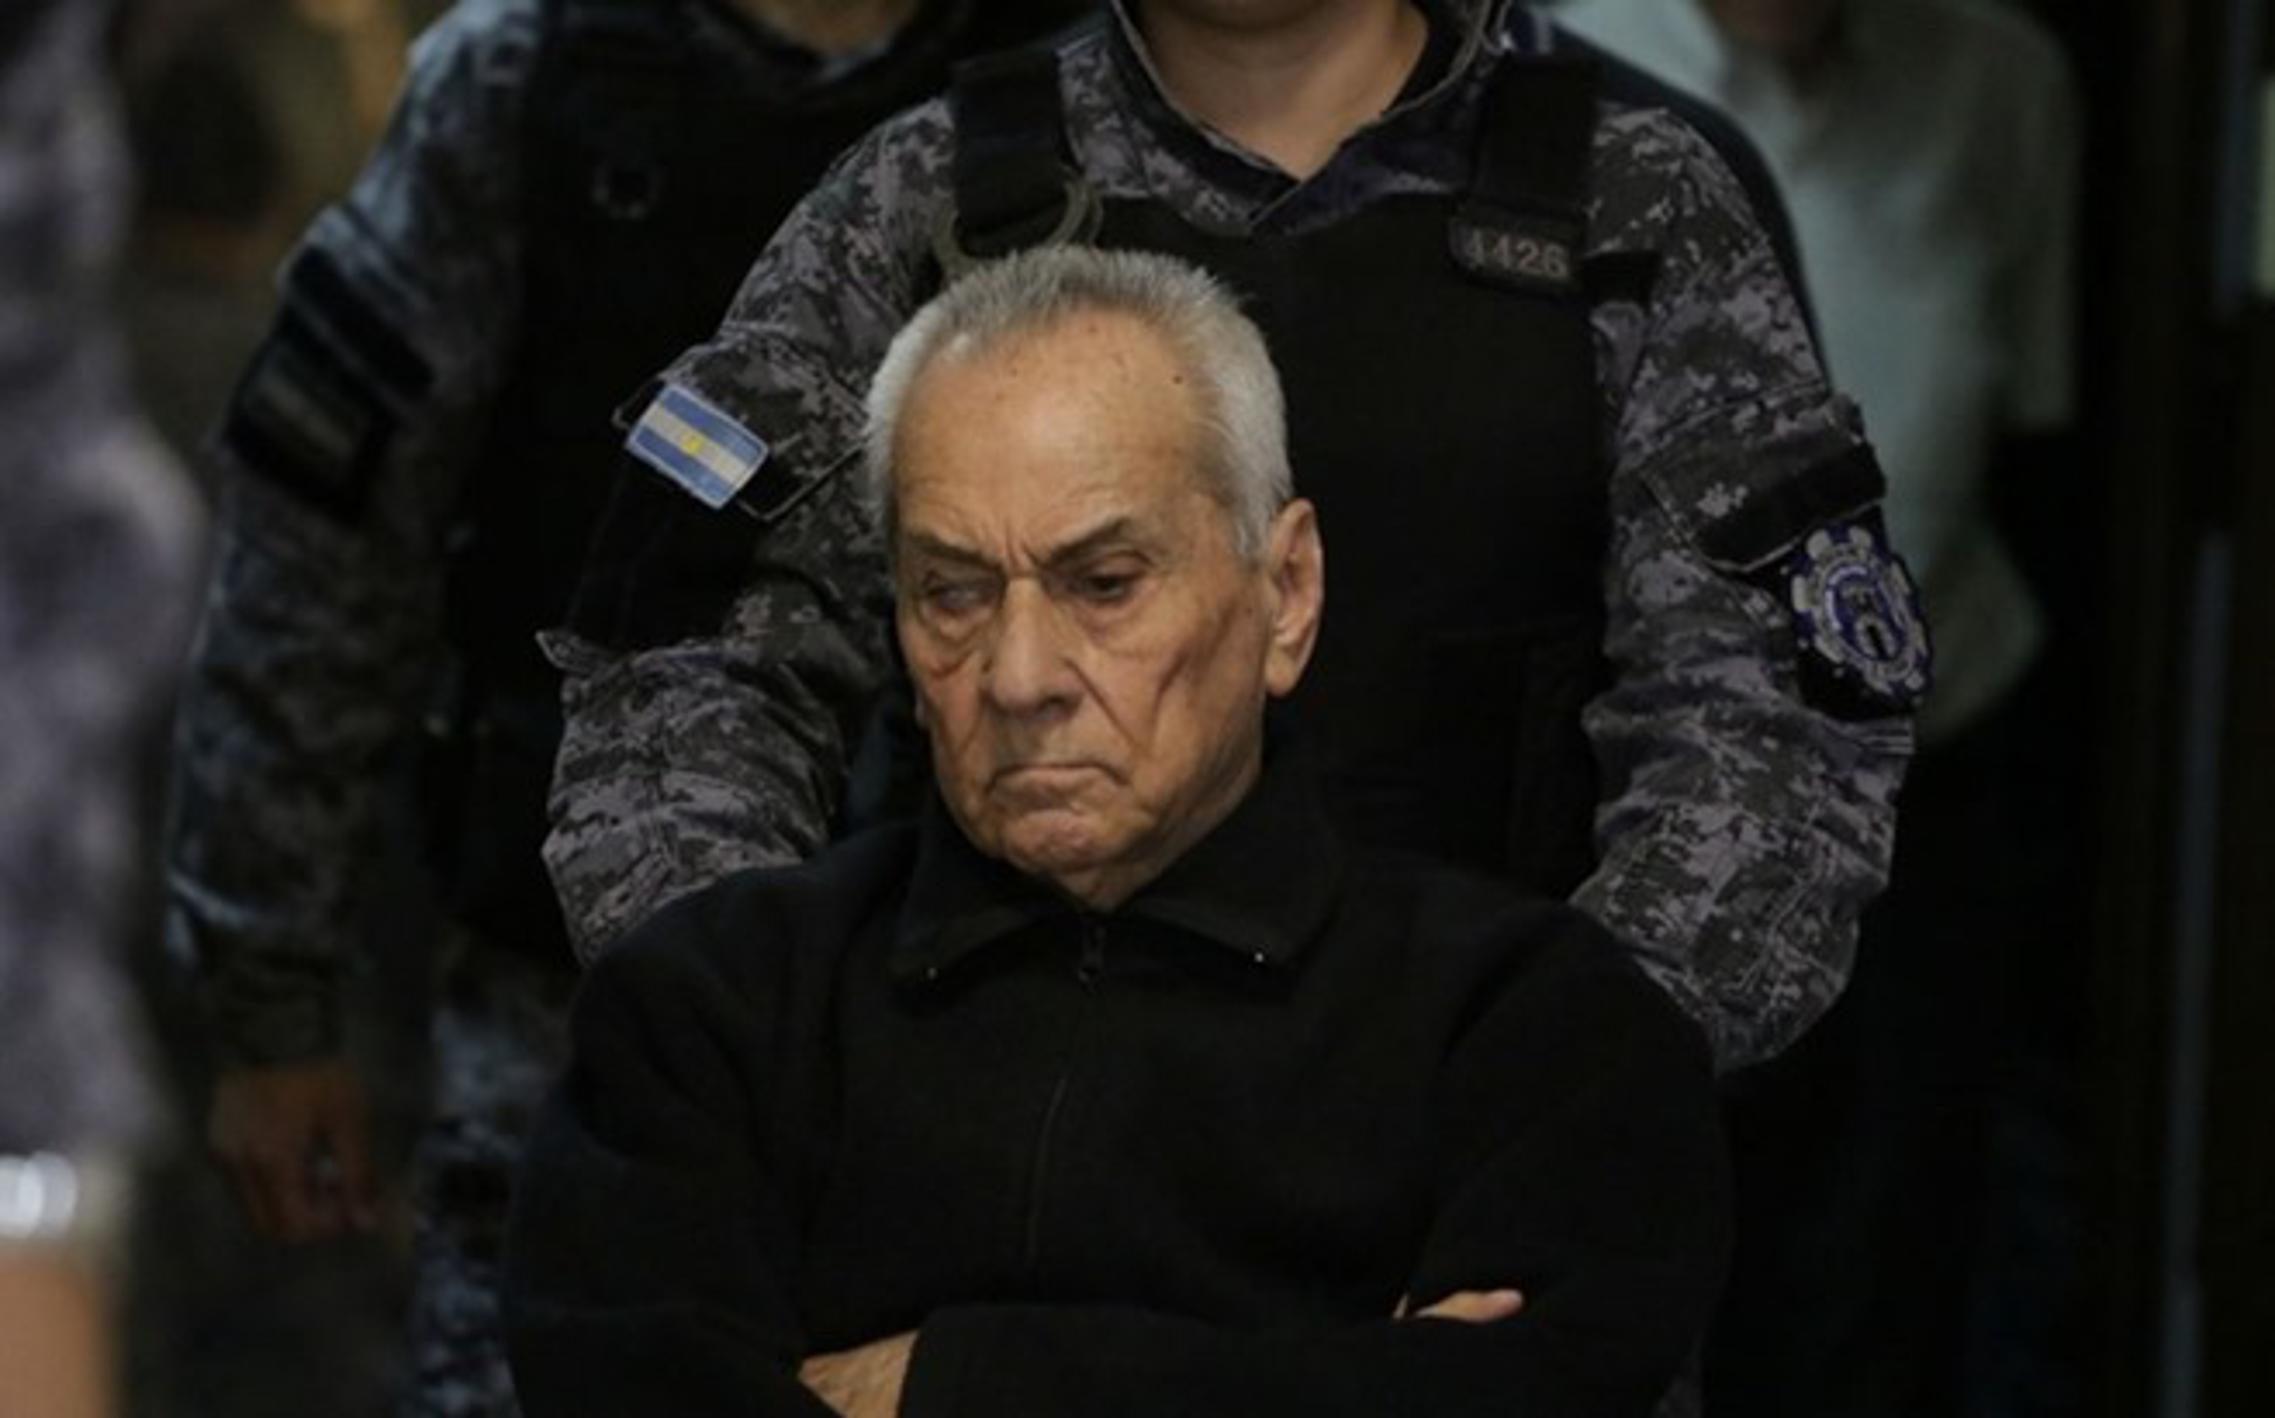 Talijanski svećenik, 83-godišnji Nicola Bruno Corradi Soliman, osuđen je na 42 godine zatvora.